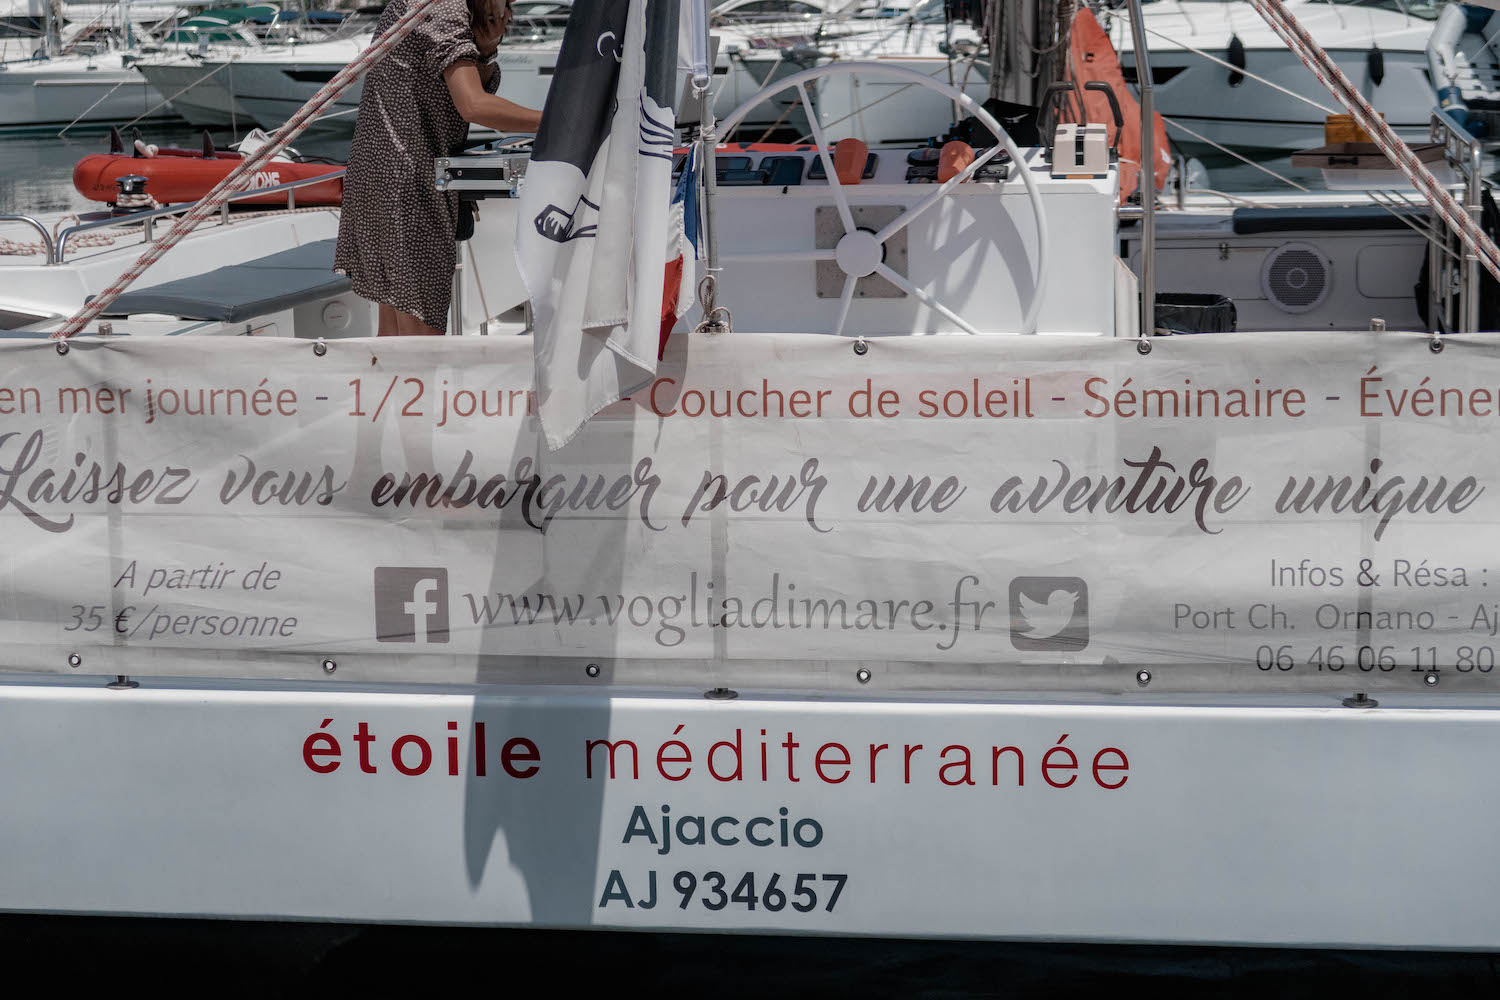 Un après-midi sur le catamaran étoile méditerranée - happinesscoco.com